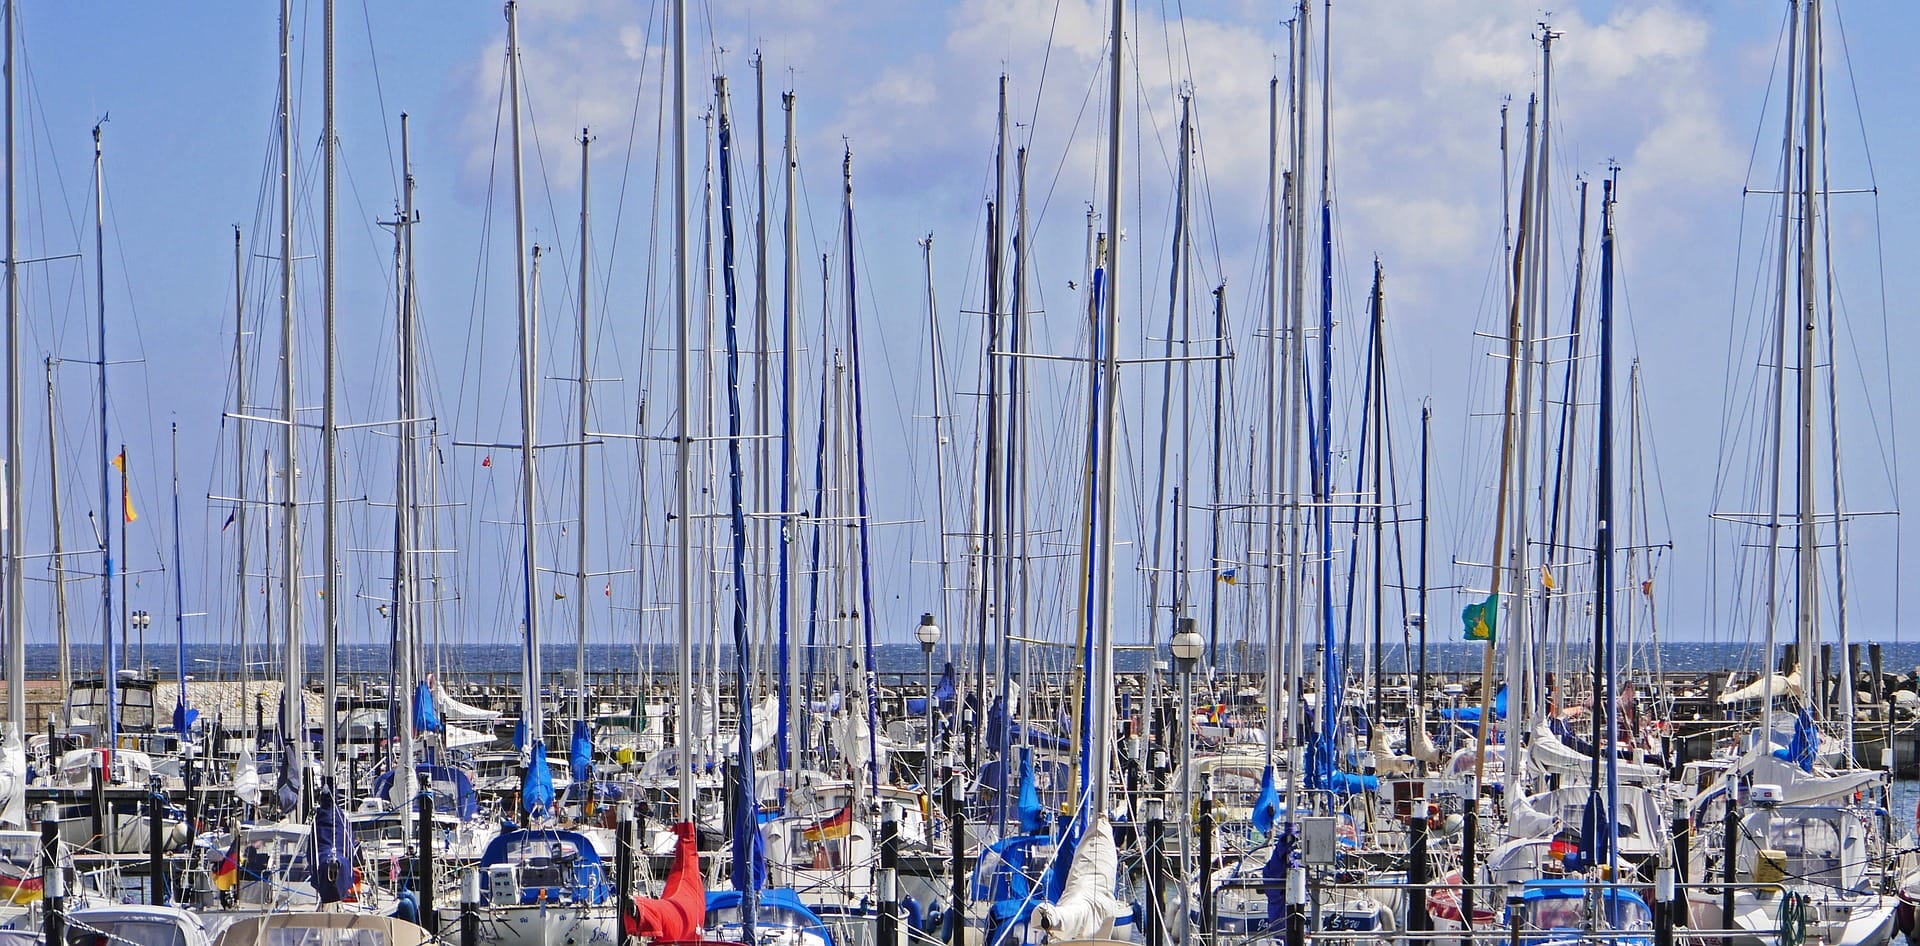 Purjeveneiden mastoja pienvenesatamassa. / Sailboat masts in a seaside port.